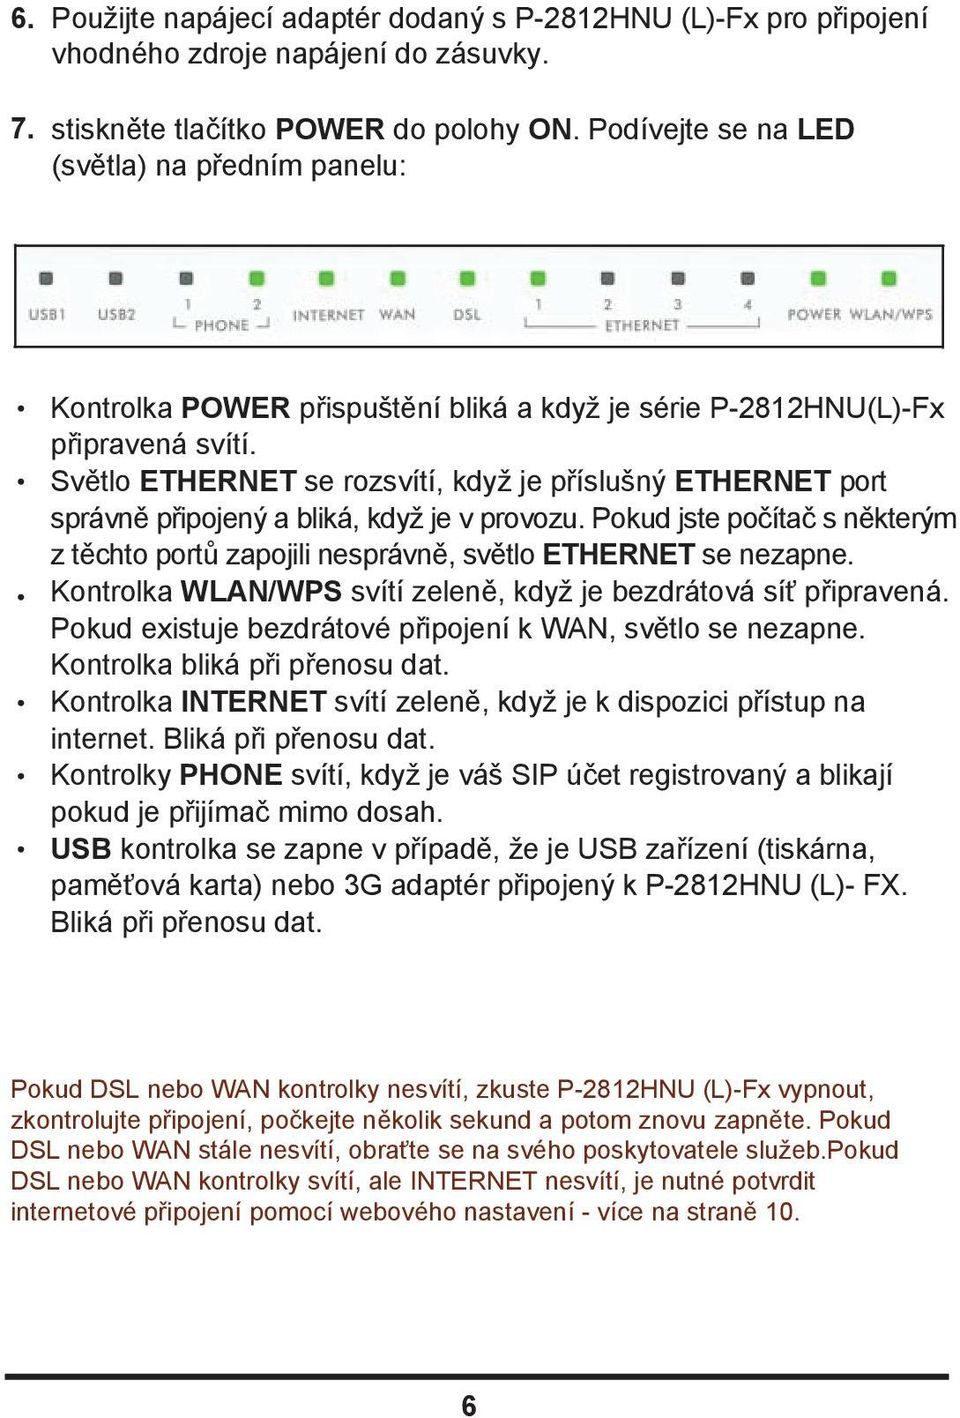 Světlo ETHERNET se rozsvítí, když je příslušný ETHERNET port správně připojený a bliká, když je v provozu. Pokud jste počítač s některým z těchto portů zapojili nesprávně, světlo ETHERNET se nezapne.